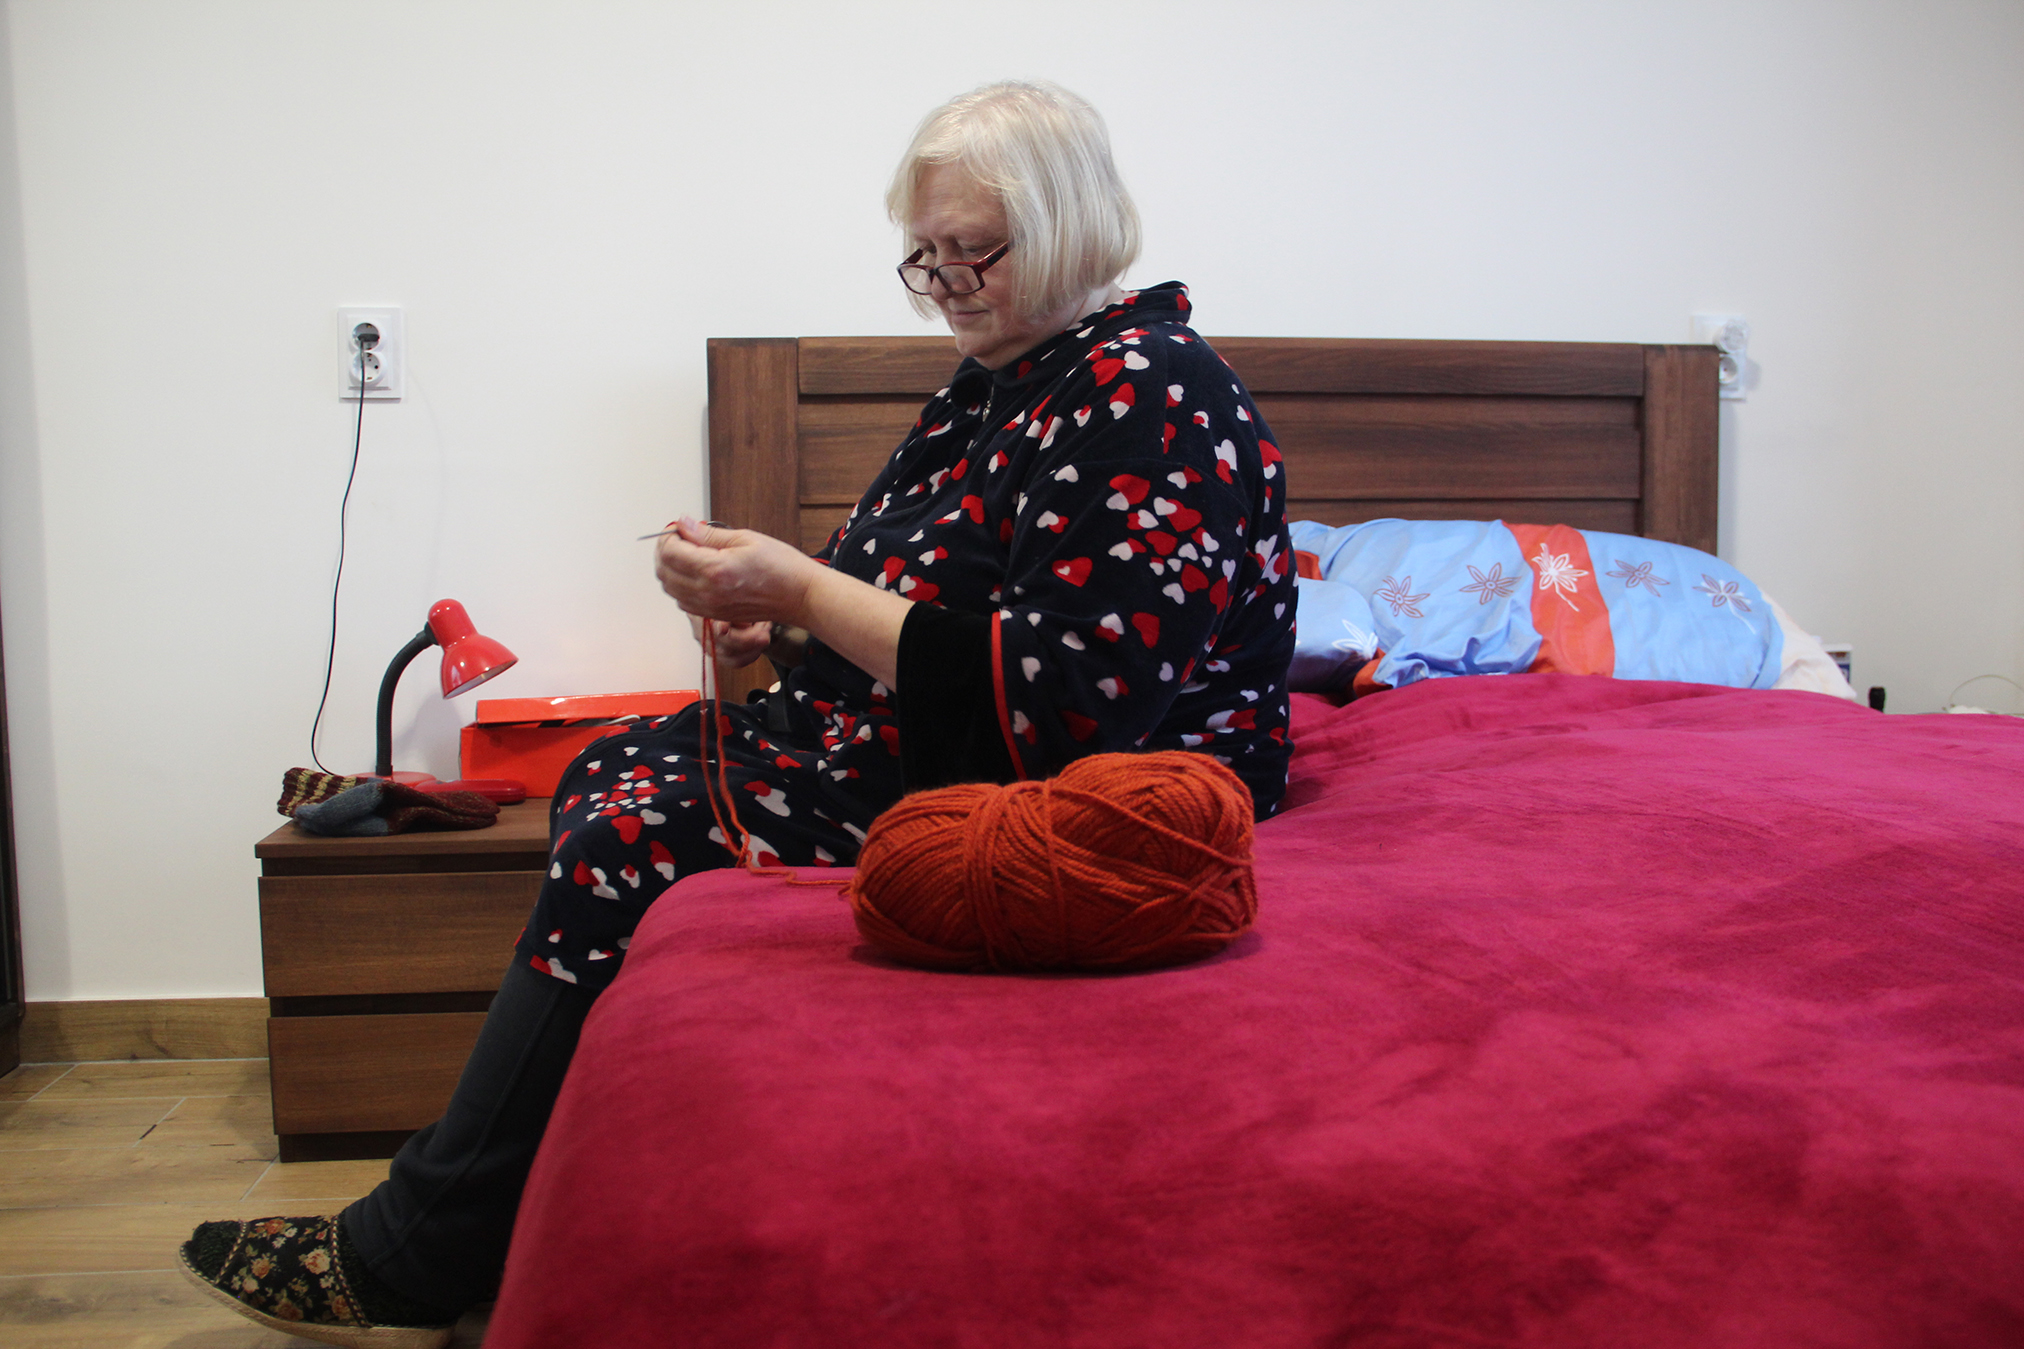 Мешканка прихистку у своїй кімнаті плете теплі шкарпетки